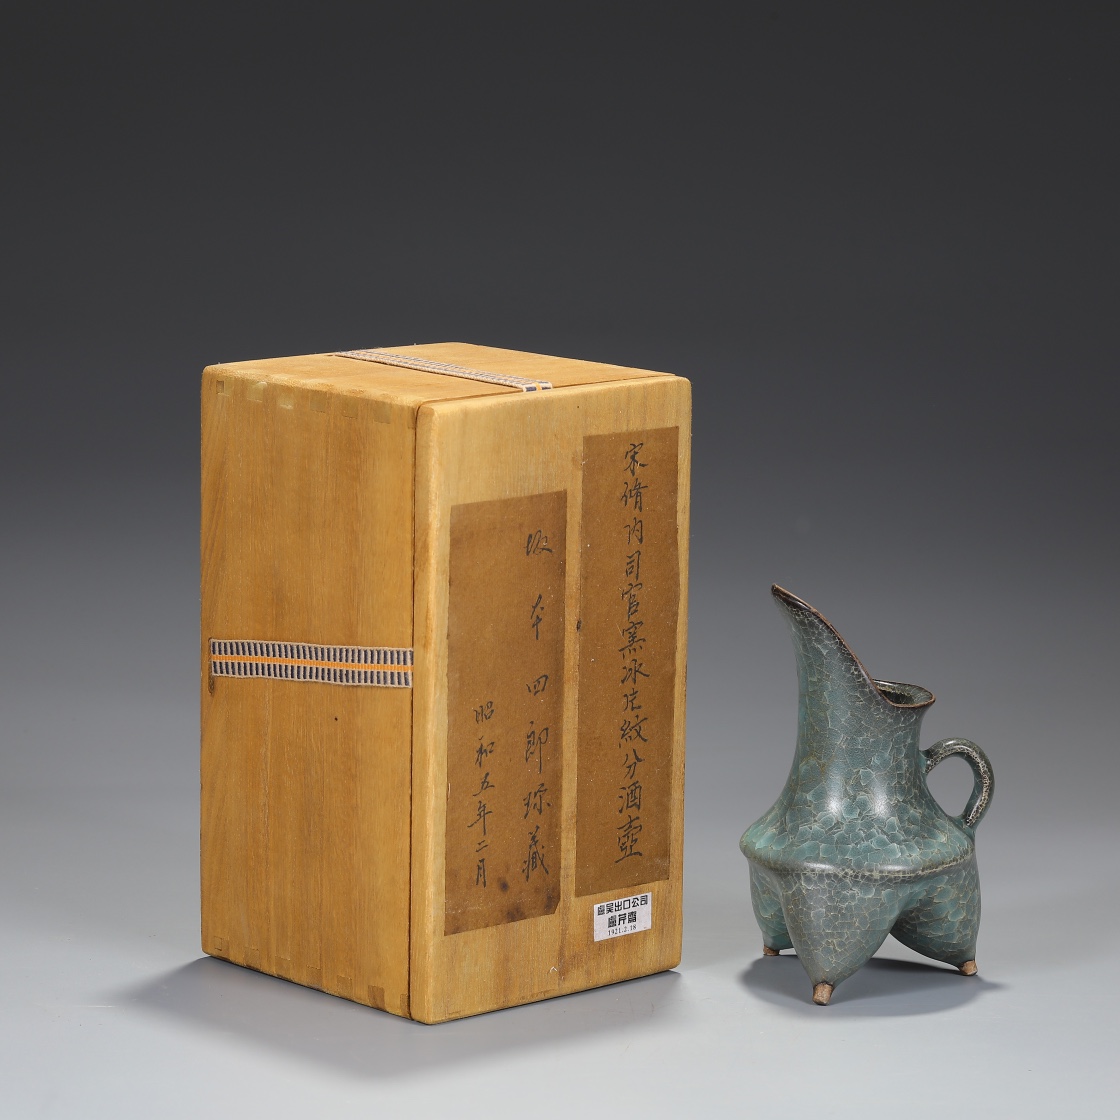 Southern Song Dynasty Xiunei Siguan kiln borneol pattern wine bottle